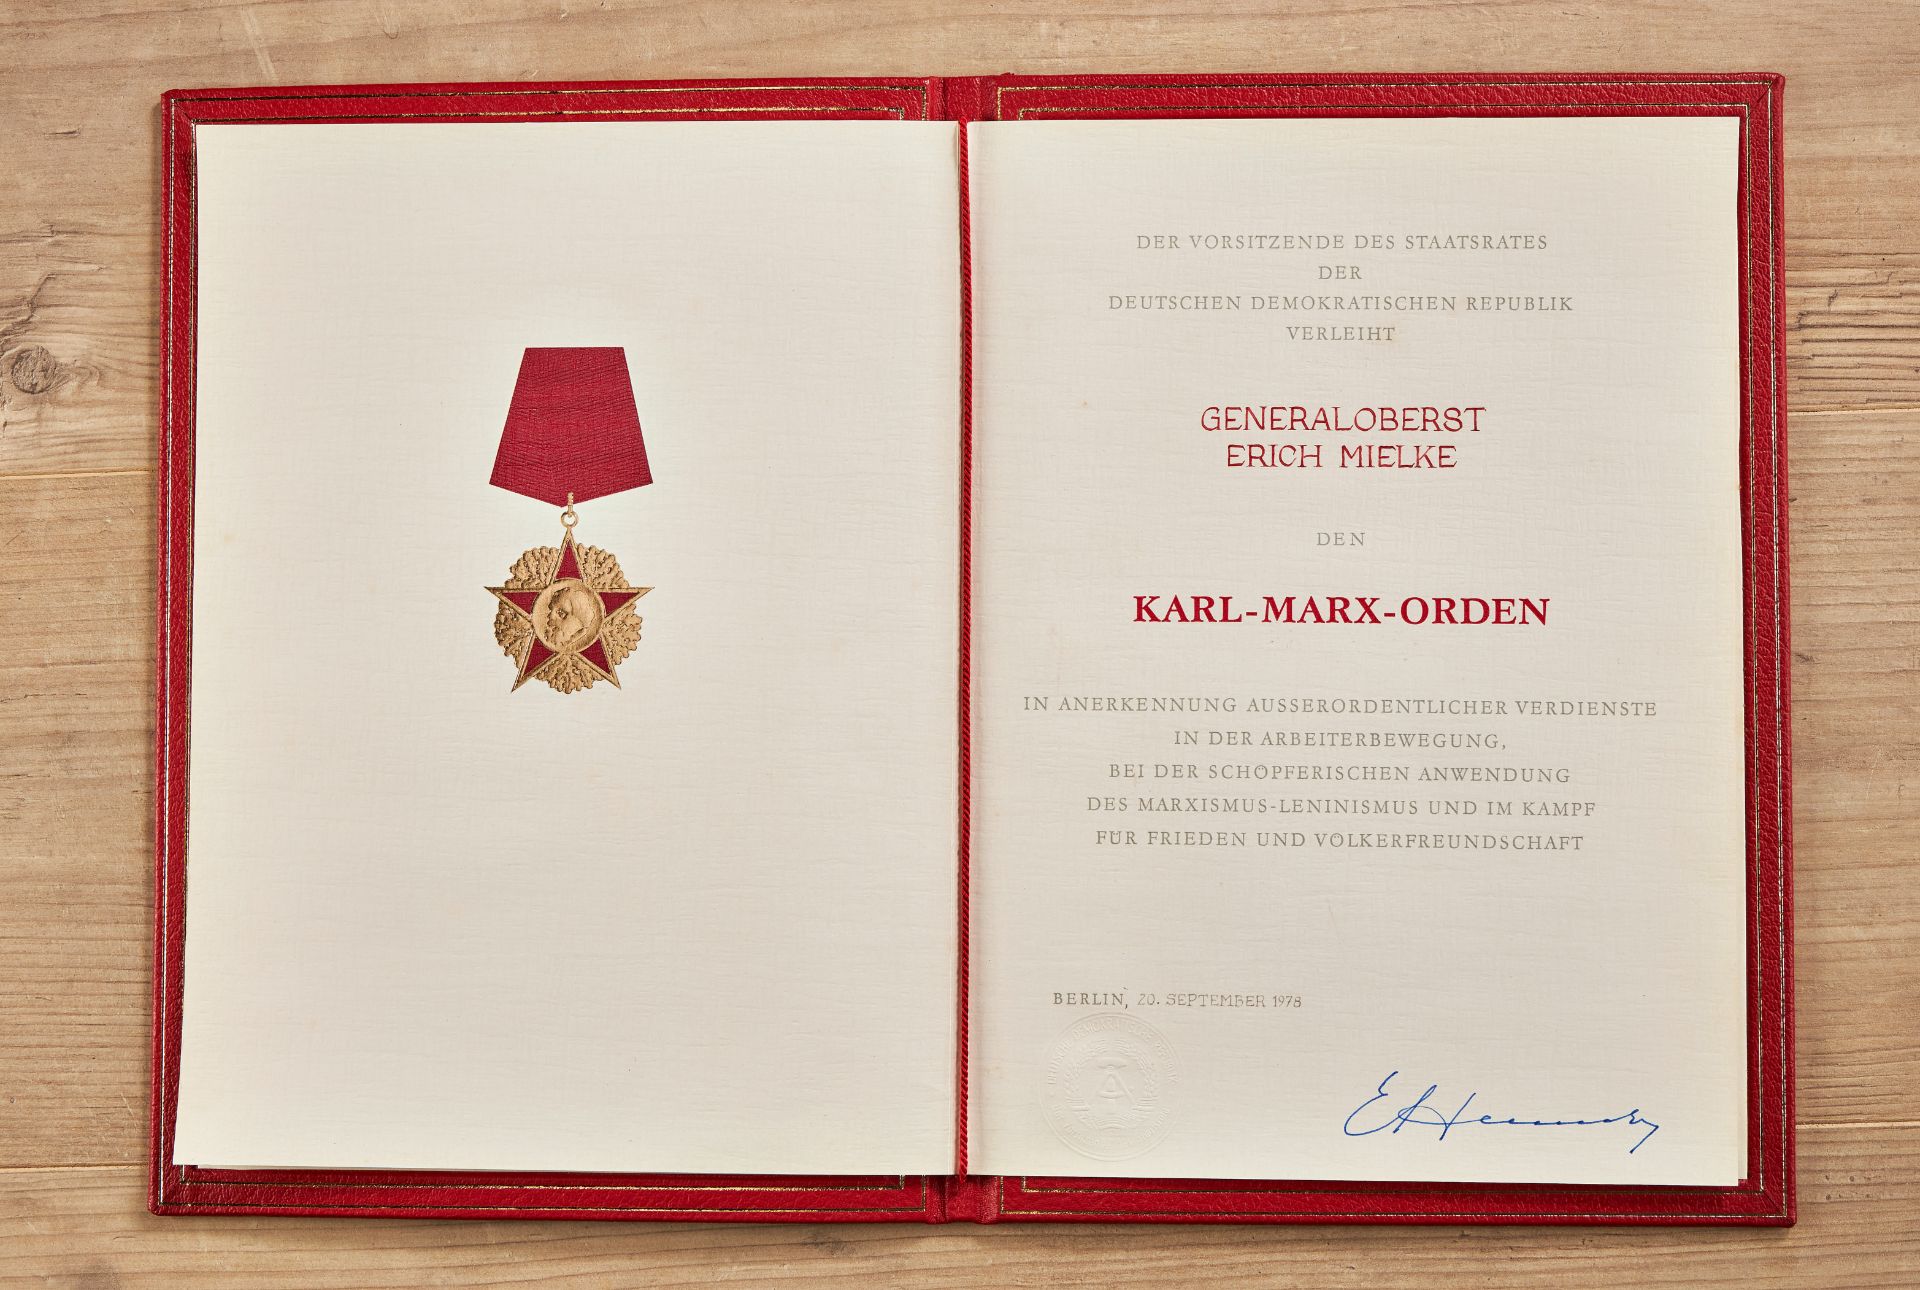 Karl Marx Orden verliehen an den Minister für Staatssicherheit Generaloberst Erich Mielke. - Image 3 of 4